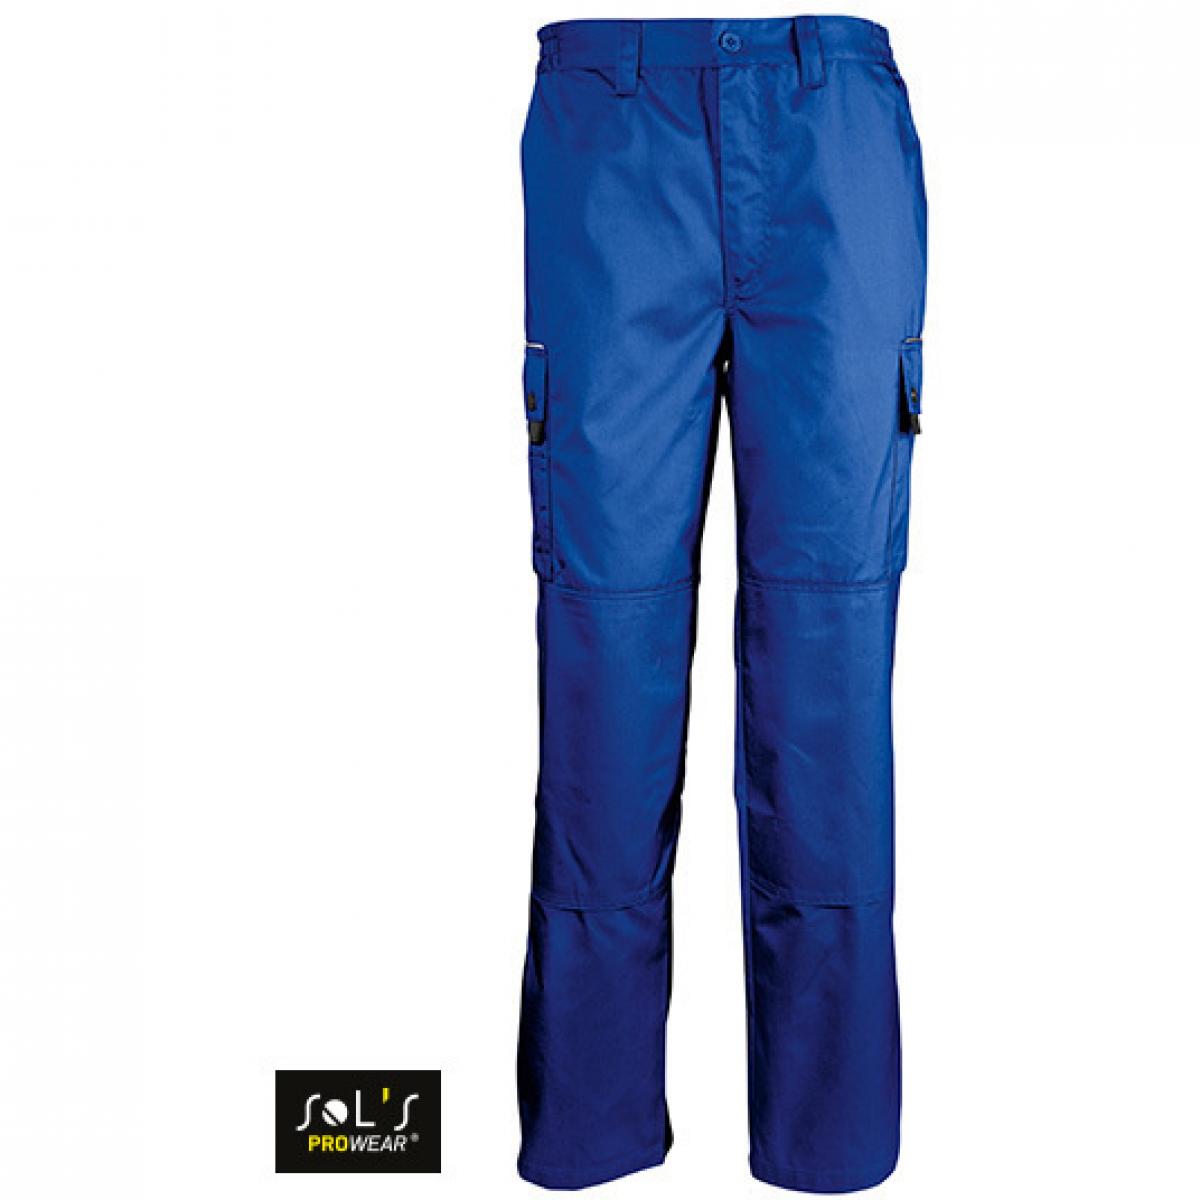 Hersteller: SOLs ProWear Herstellernummer: 80600 Artikelbezeichnung: Herren Workwear Trousers Active Pro / Waschbar bis 60 °C Farbe: Bugatti Blue